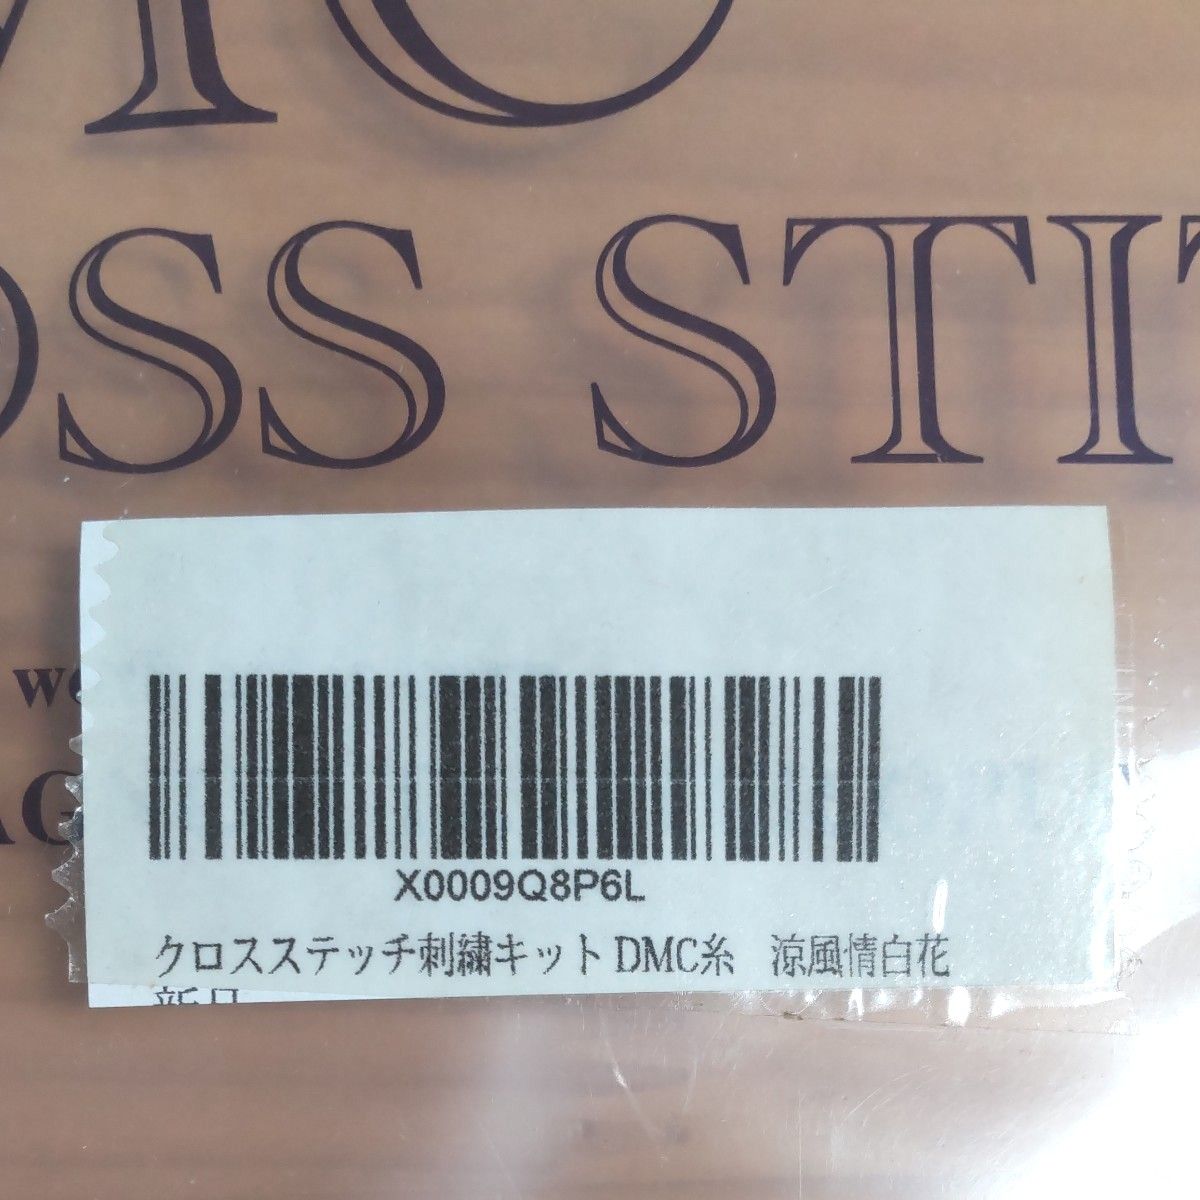 クロスステッチキット『涼風情白花』DMC糸使用  出来上がりサイズは約20×20cm  外装ケースのみダメージあり   新品